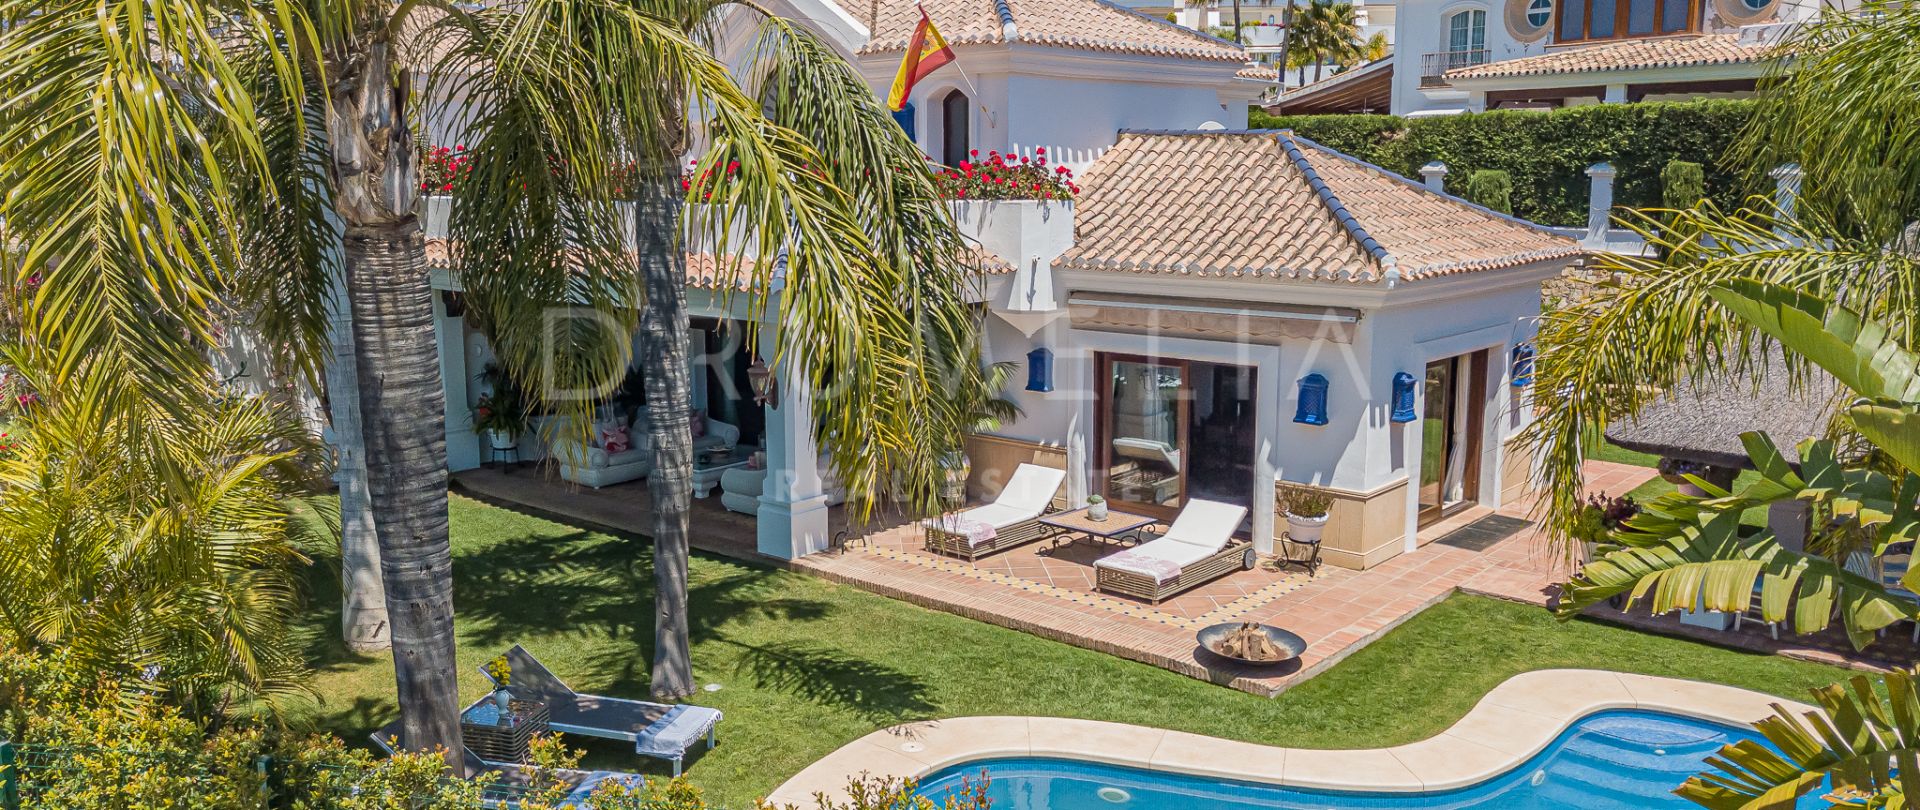 Villa for salg i Bahia de Marbella, Marbella Øst